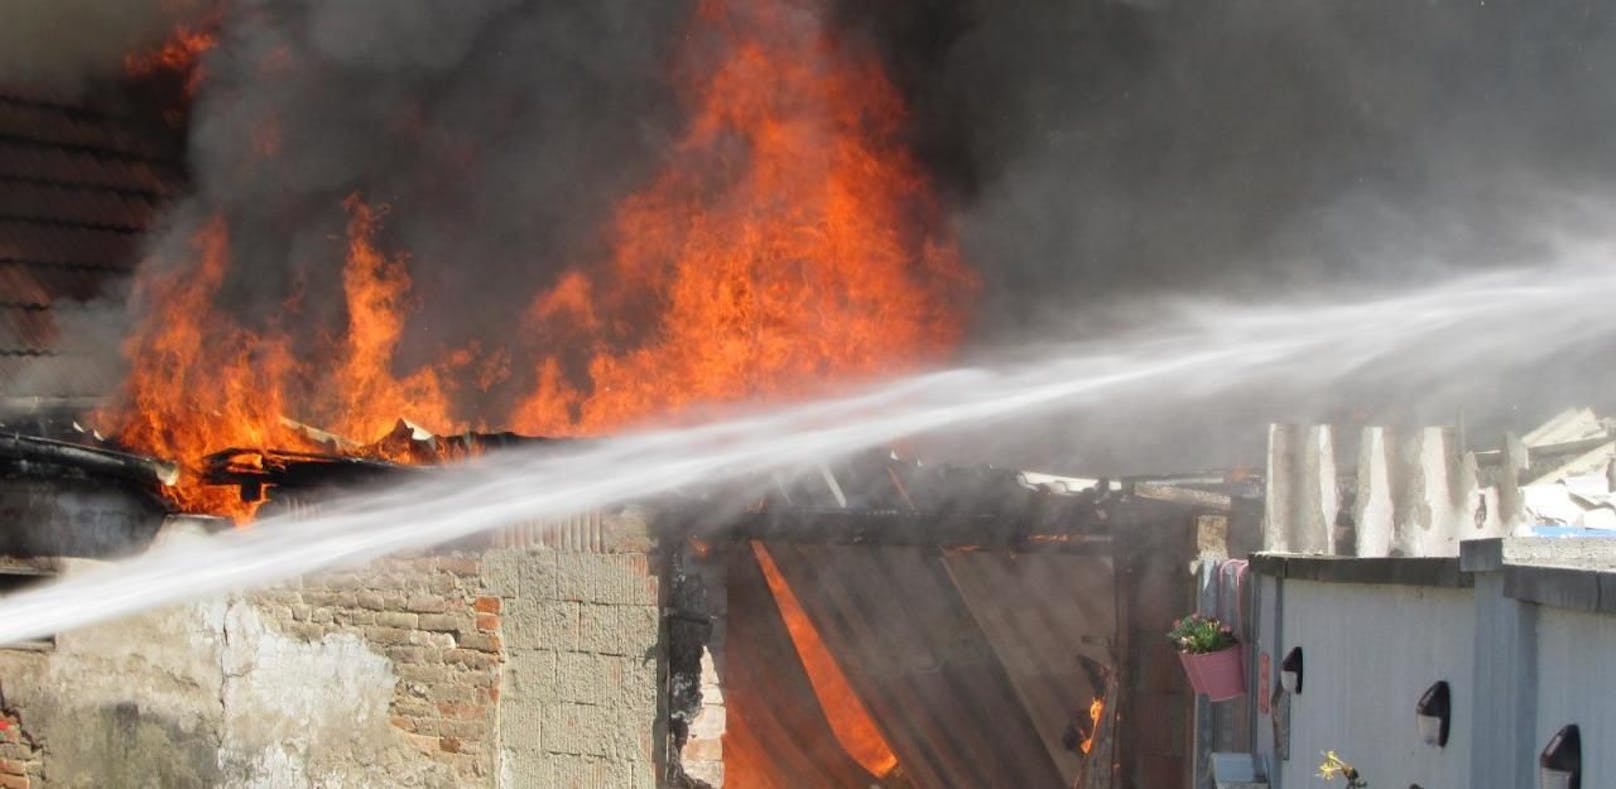 Kind spielt mit Feuerzeug: Zwei Häuser in Flammen